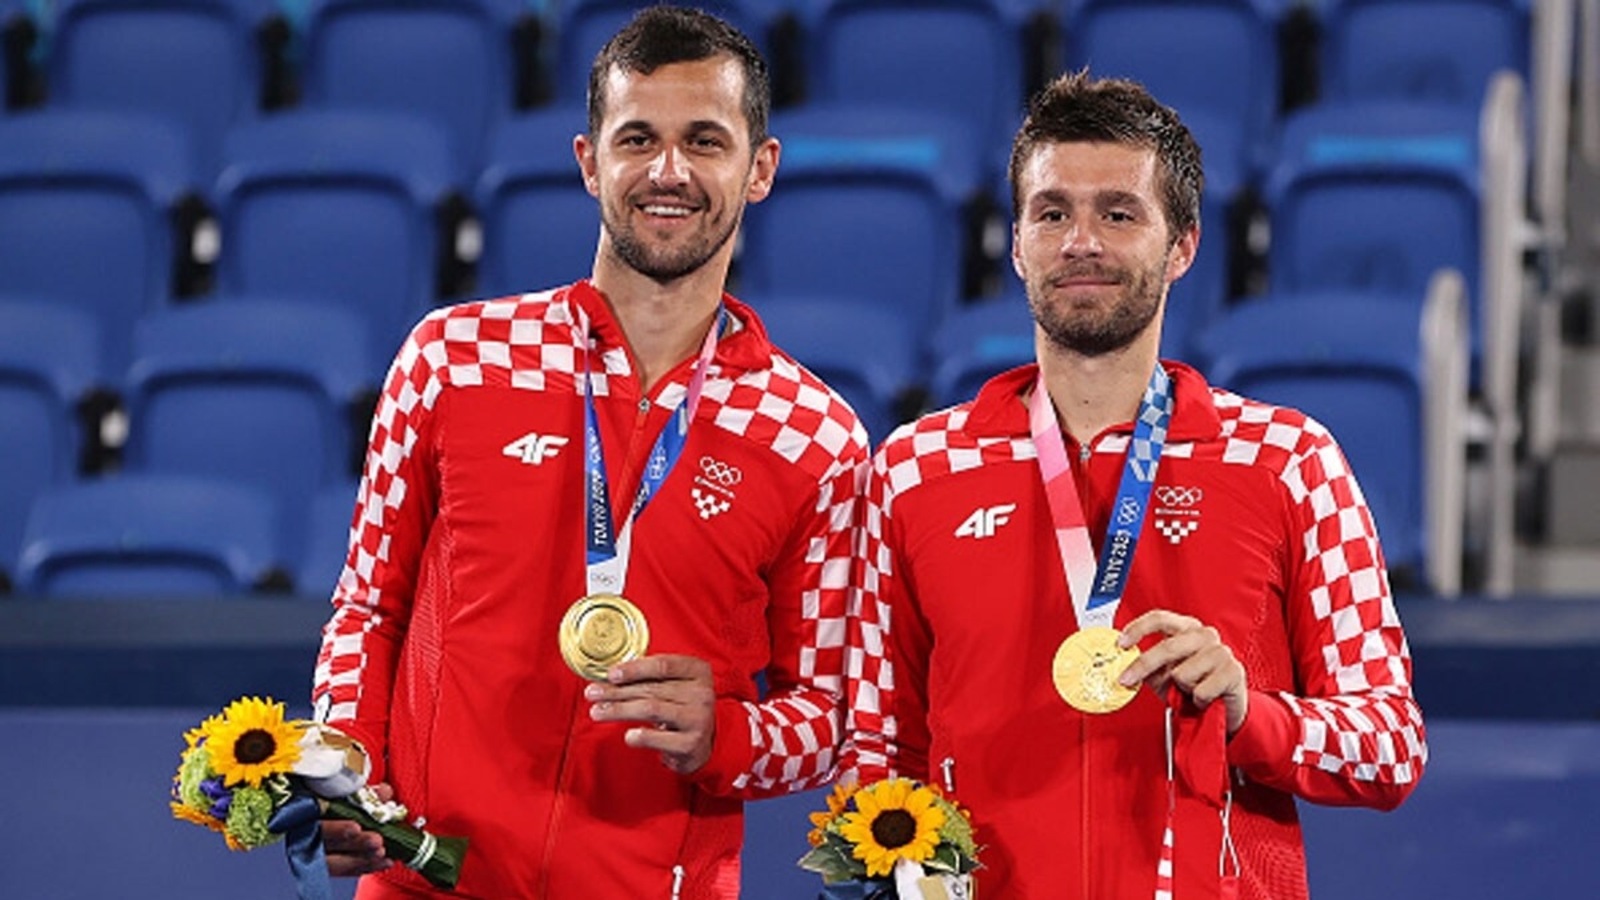 Croatia's Mektić and Pavić now world No.1 doubles team after winning Rome  Masters